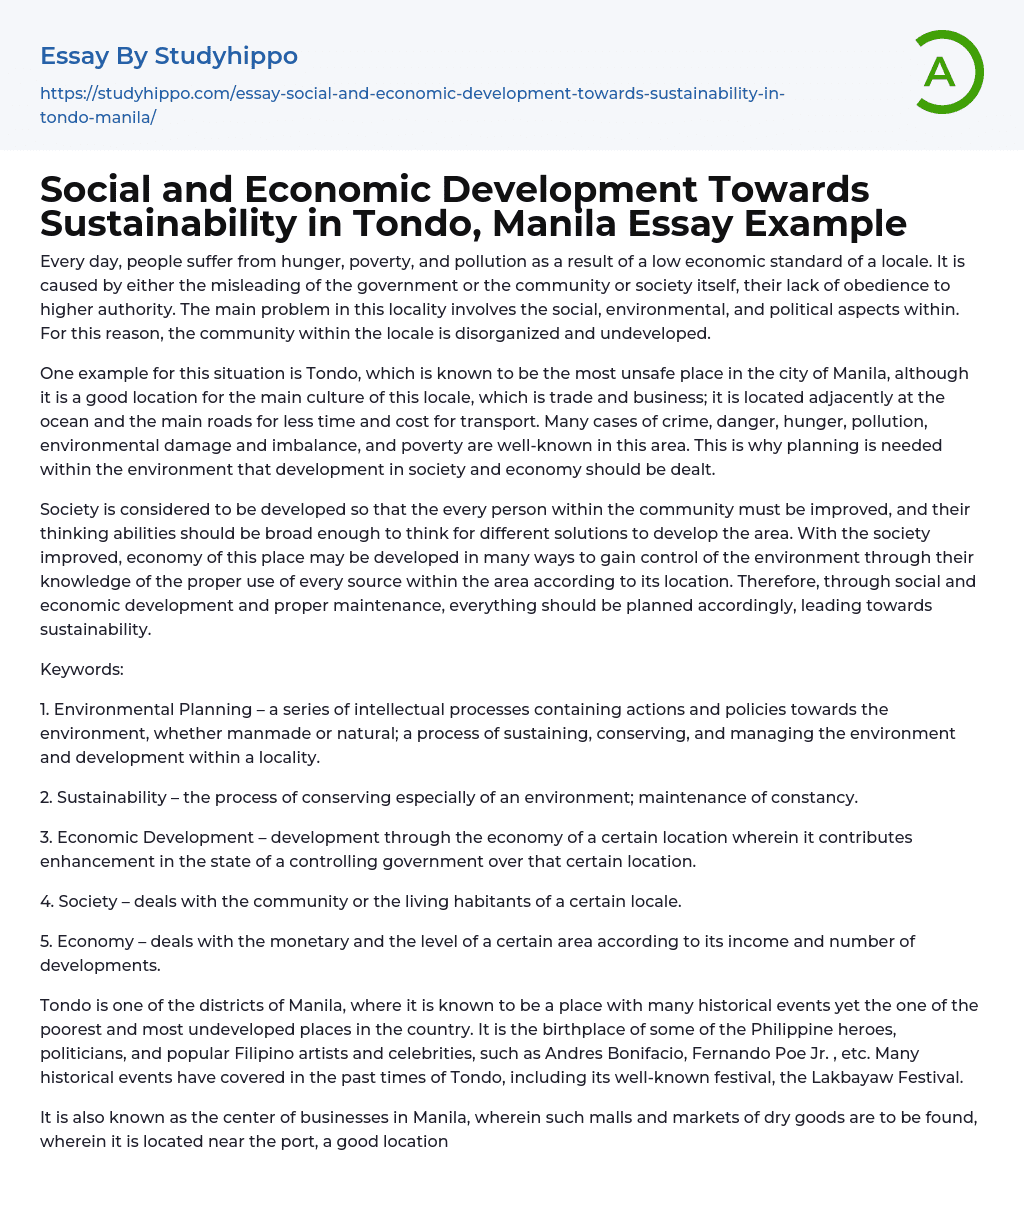 Social and Economic Development Towards Sustainability in Tondo, Manila Essay Example